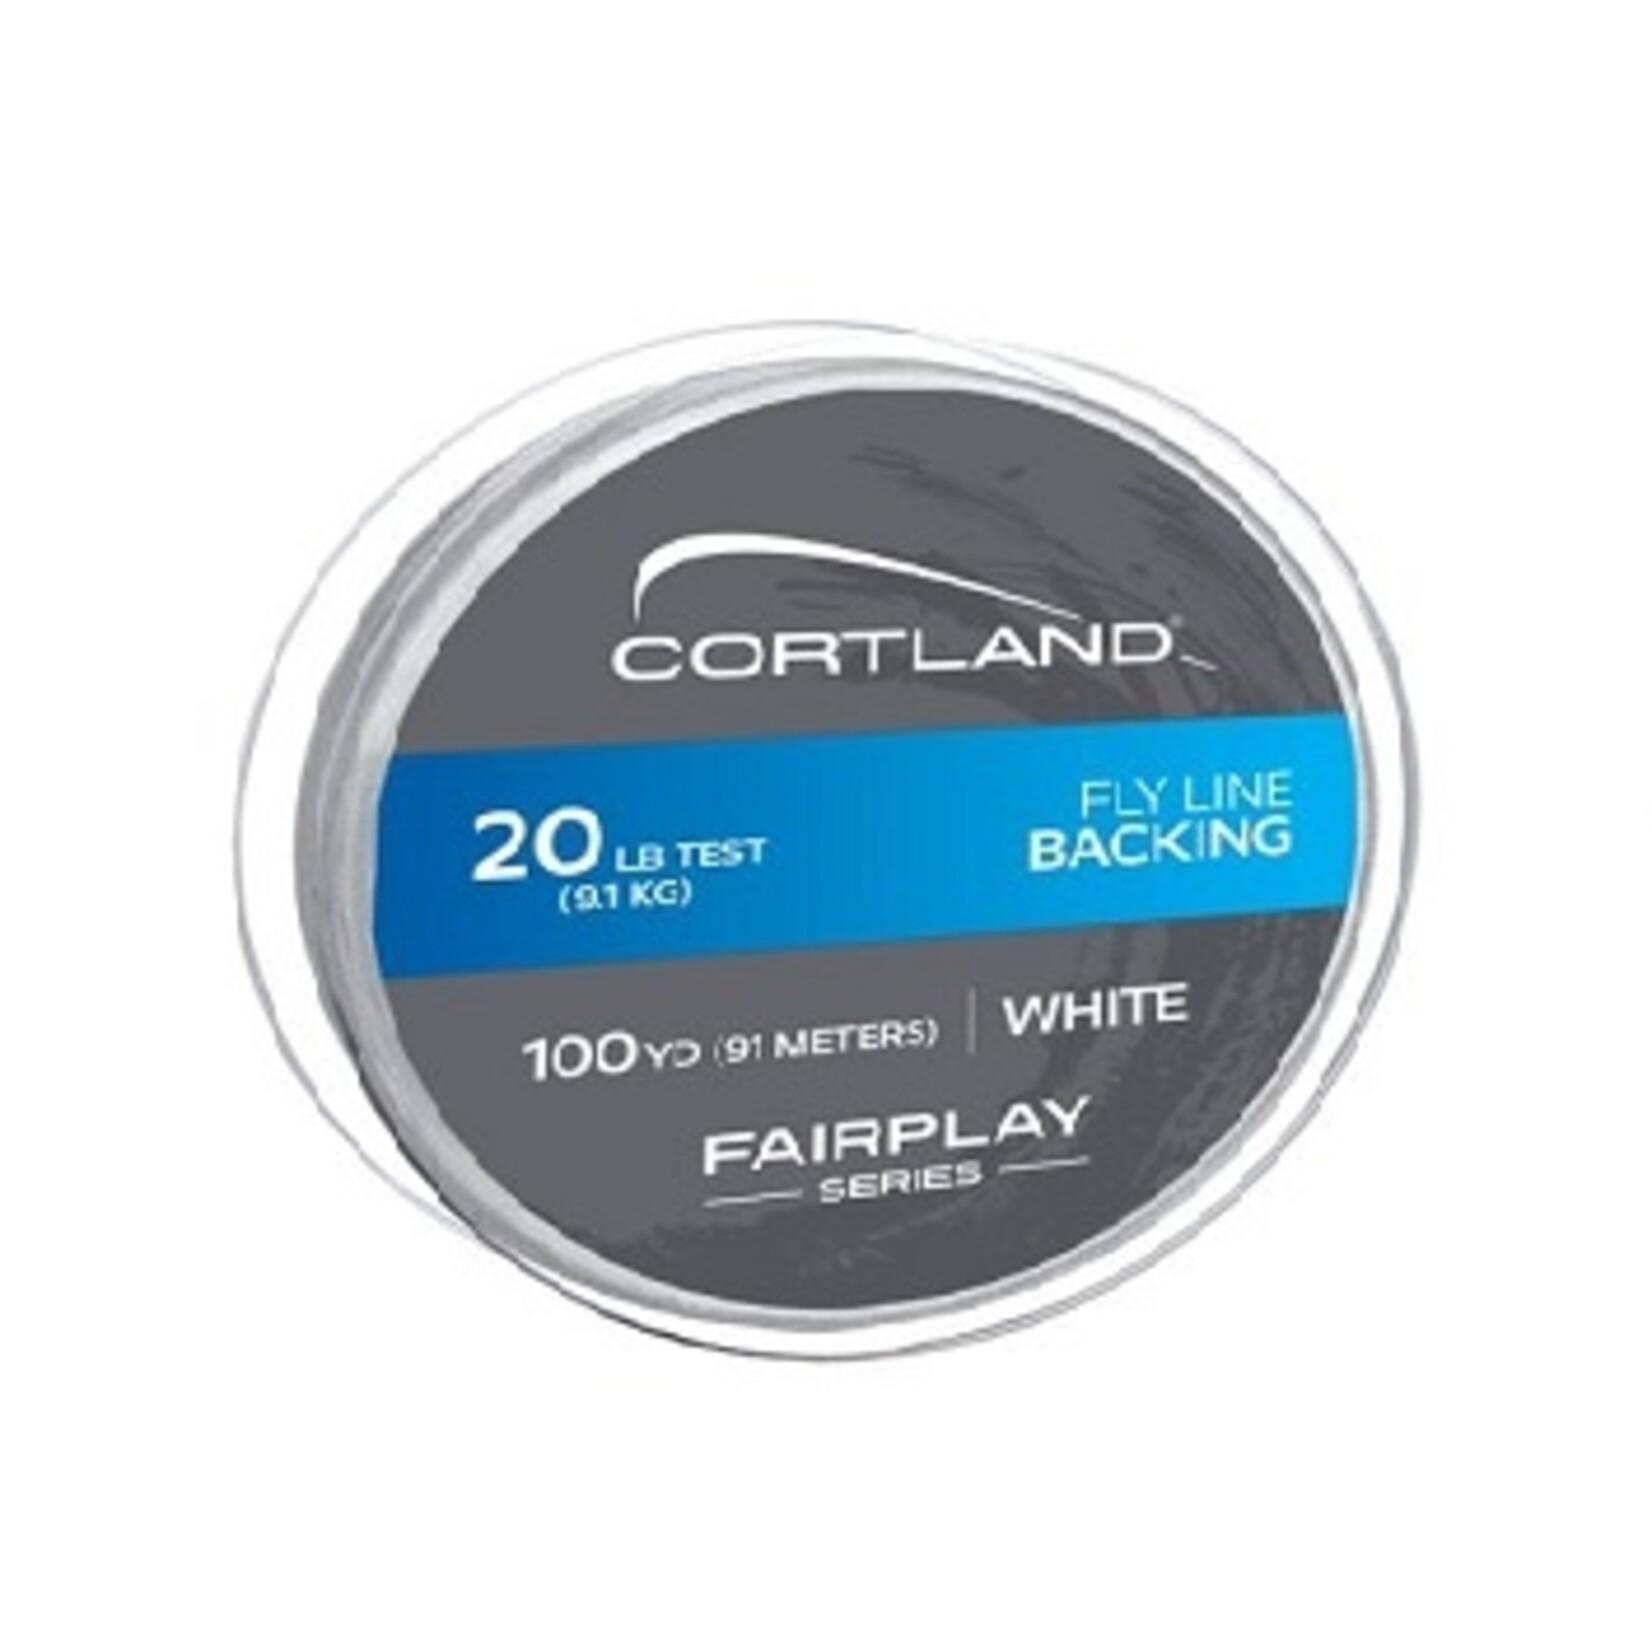 CORTLAND Fil De Reserve Cortland 20Lb 100 Verges Blanc